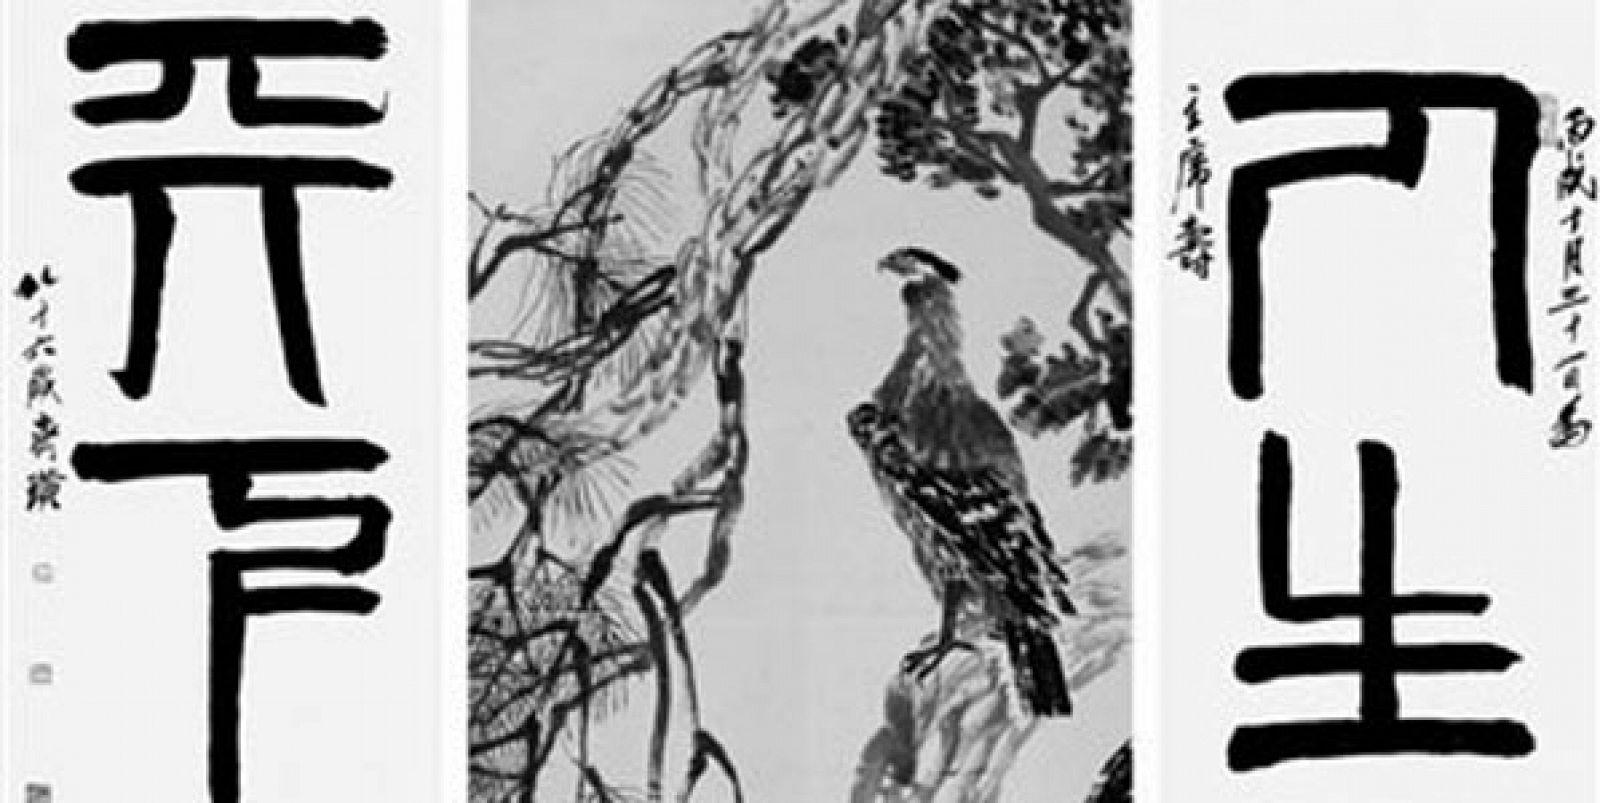 Águila sobre pino rodeada por las frases "una larga vida" y " un mundo en paz"